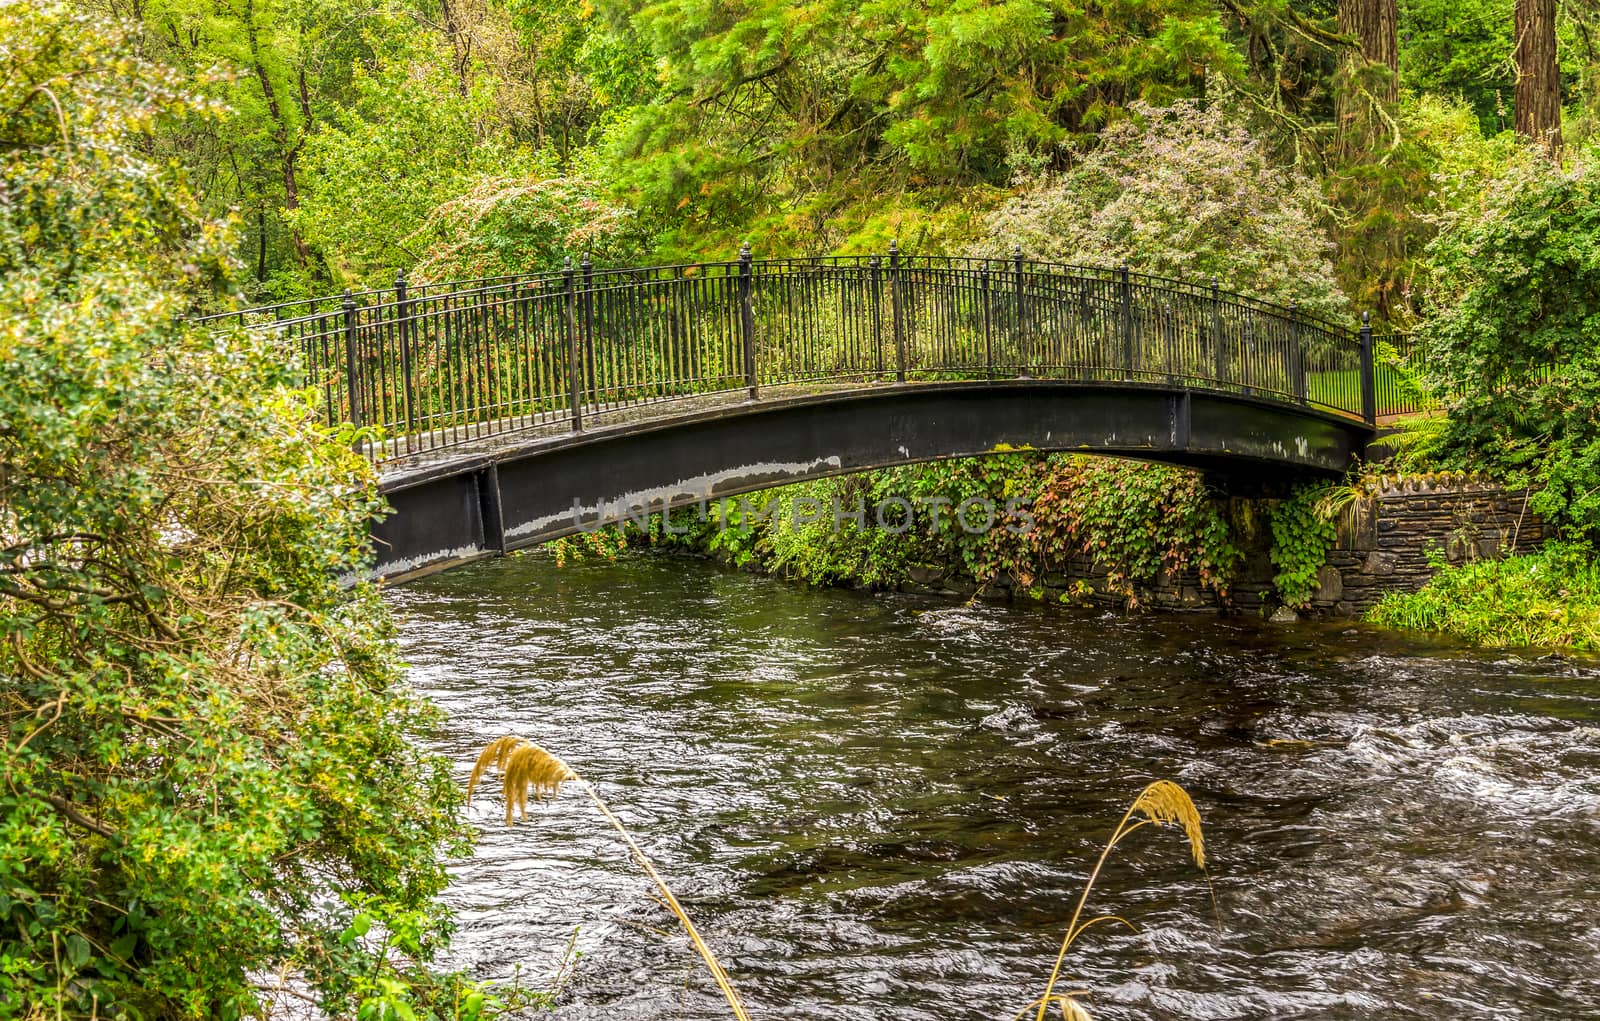 A pedestrian visitor's bridge over river Eachaig in Benmore Botanic Garden, Scotland by anastasstyles